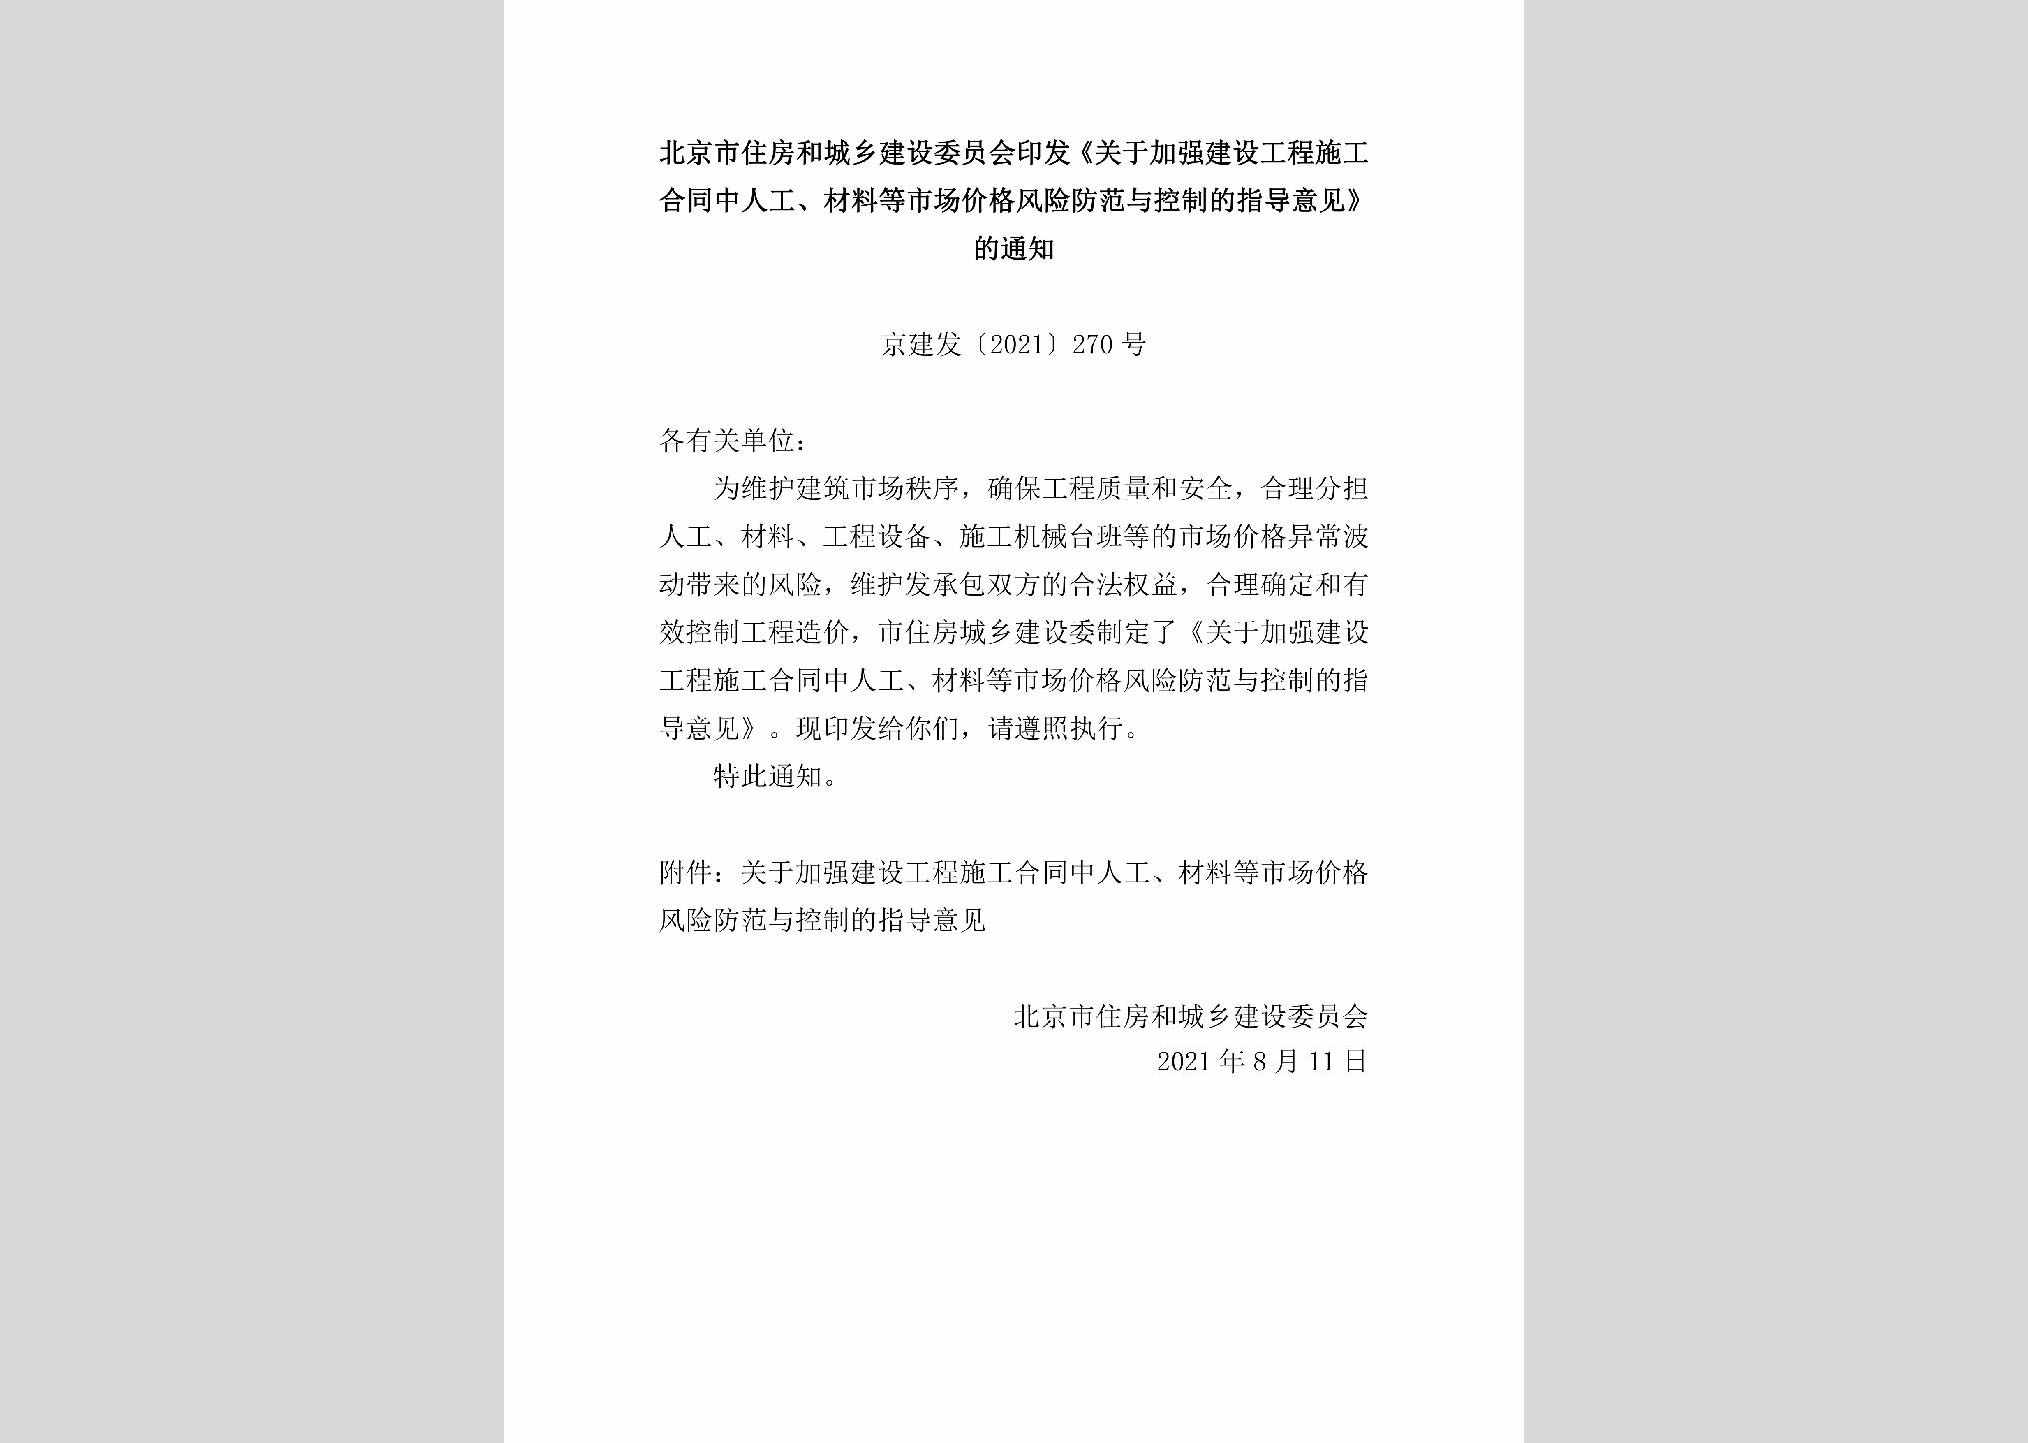 京建发[2021]270号：北京市住房和城乡建设委员会印发《关于加强建设工程施工合同中人工、材料等市场价格风险防范与控制的指导意见》的通知